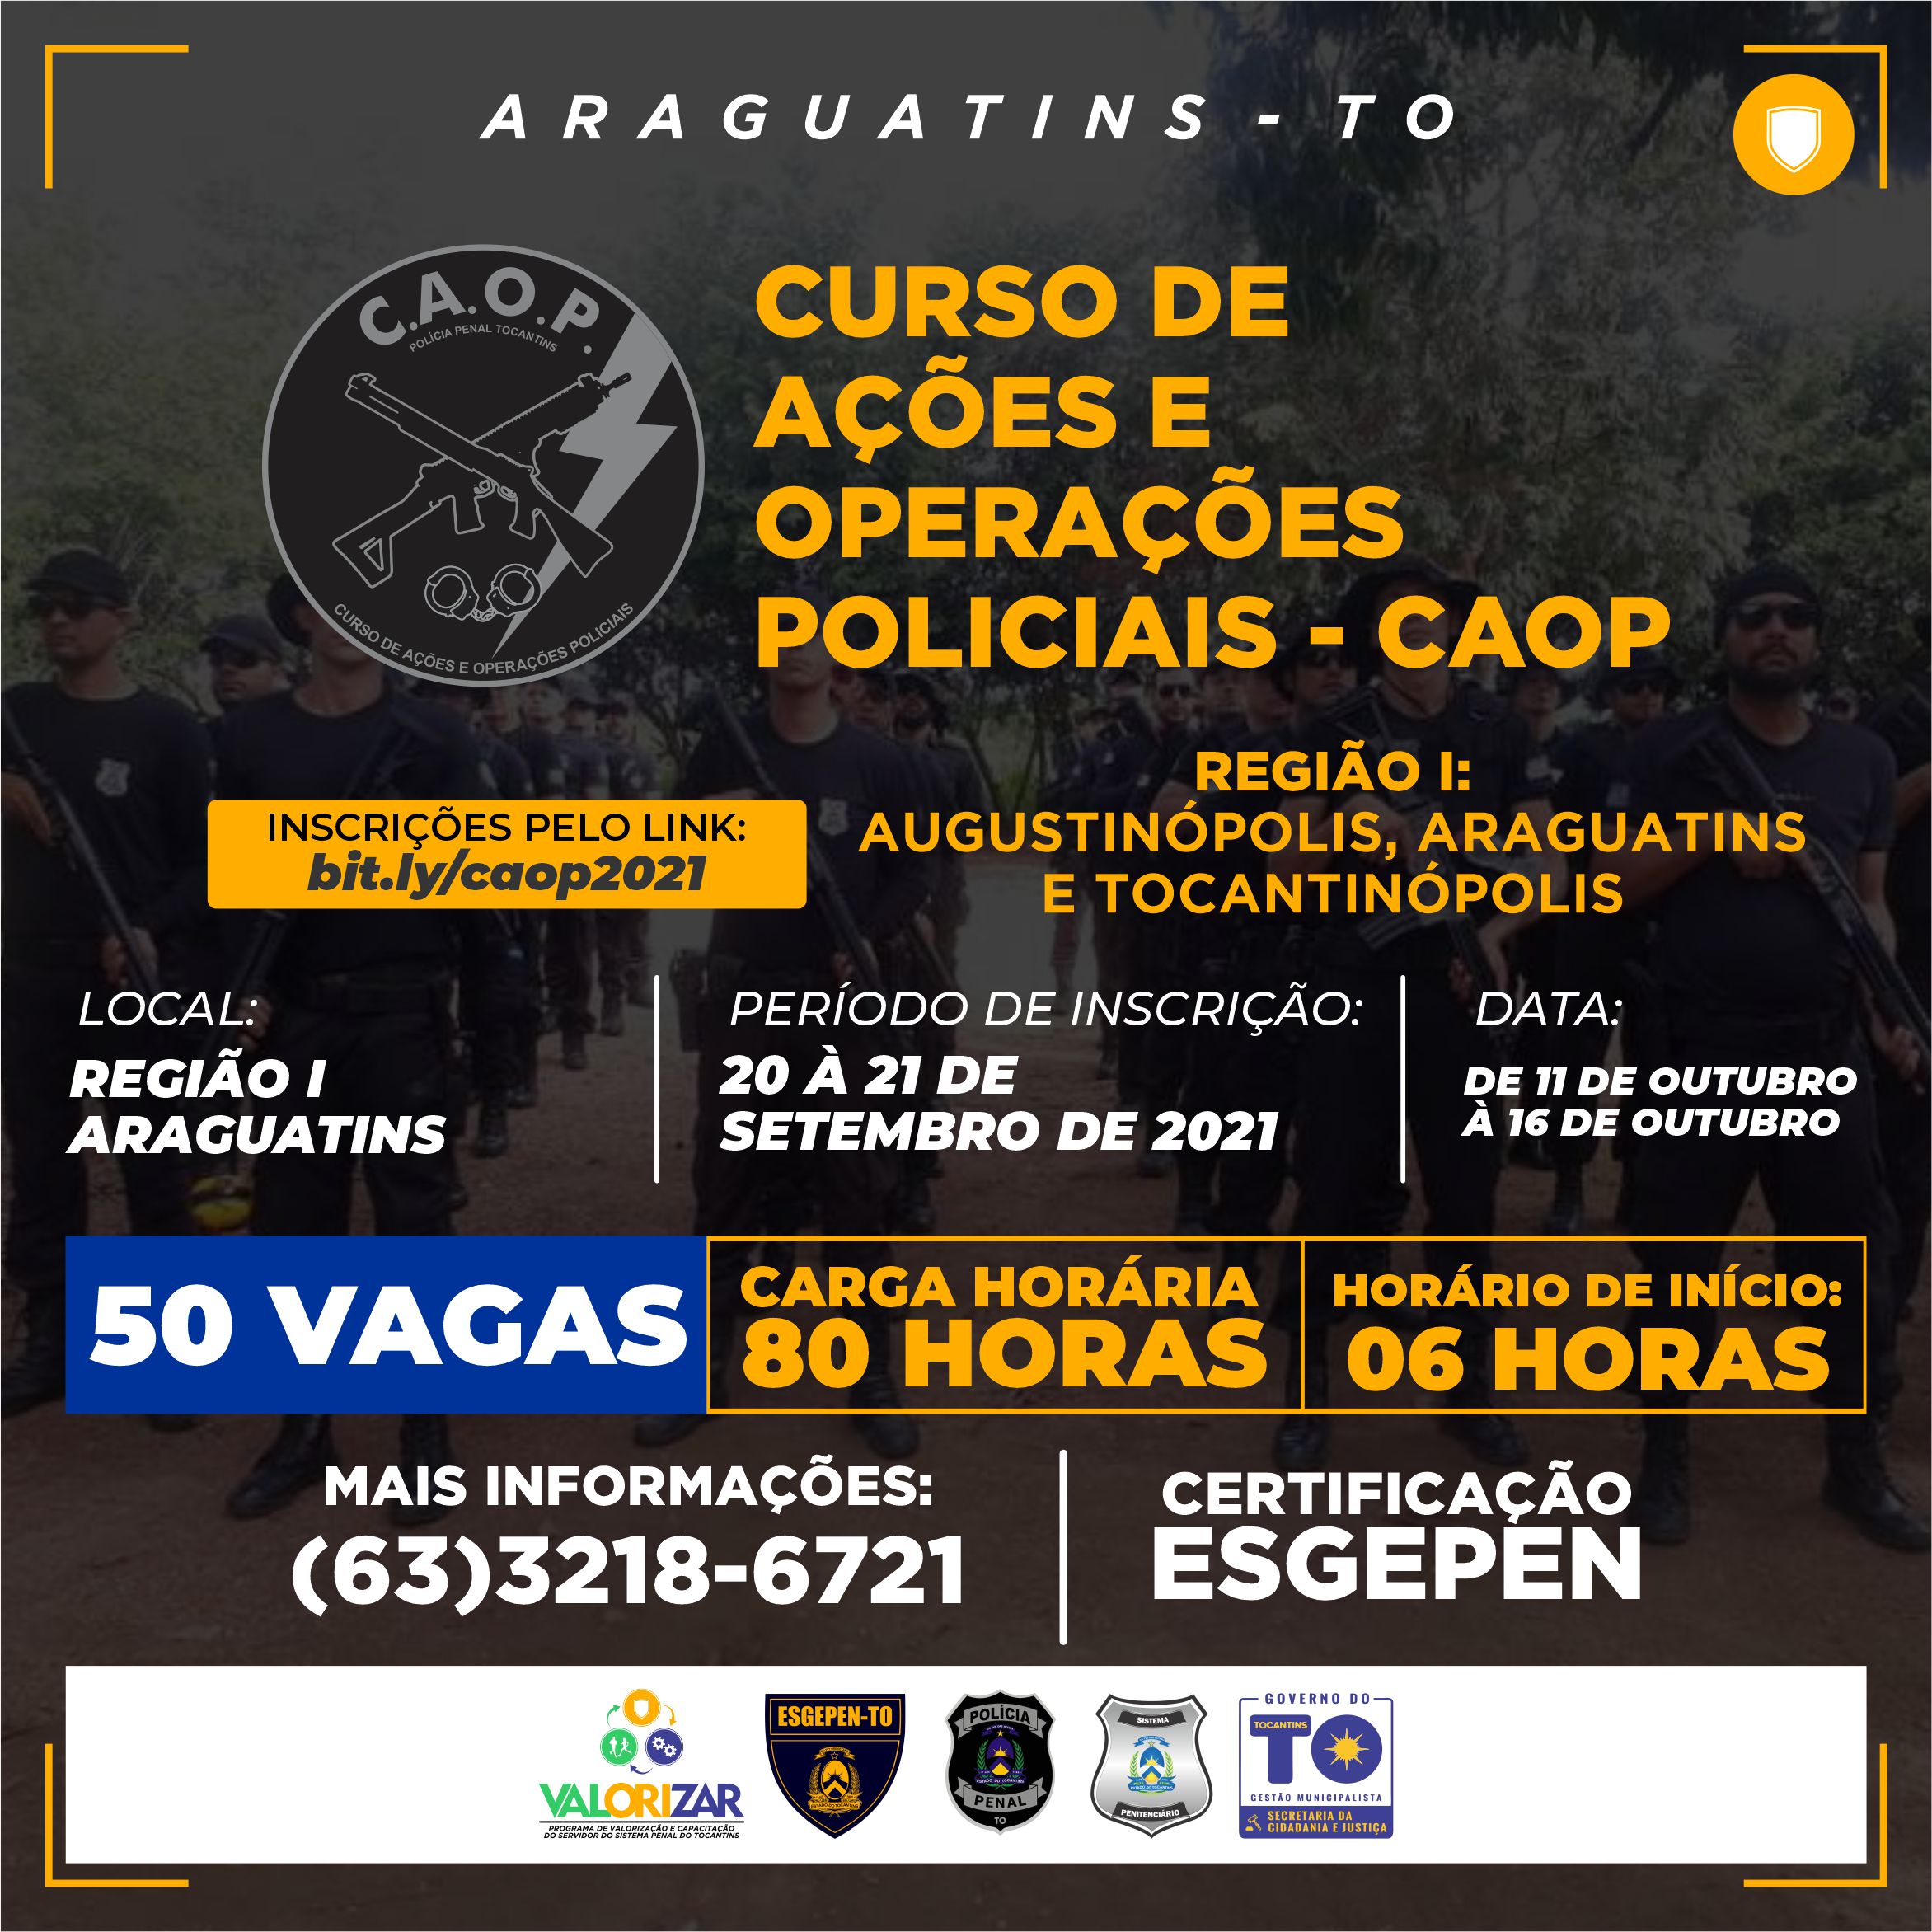 [ARAGUATINS] CURSO DE AÇÕES E OPERAÇÕES POLICIAIS - CAOP